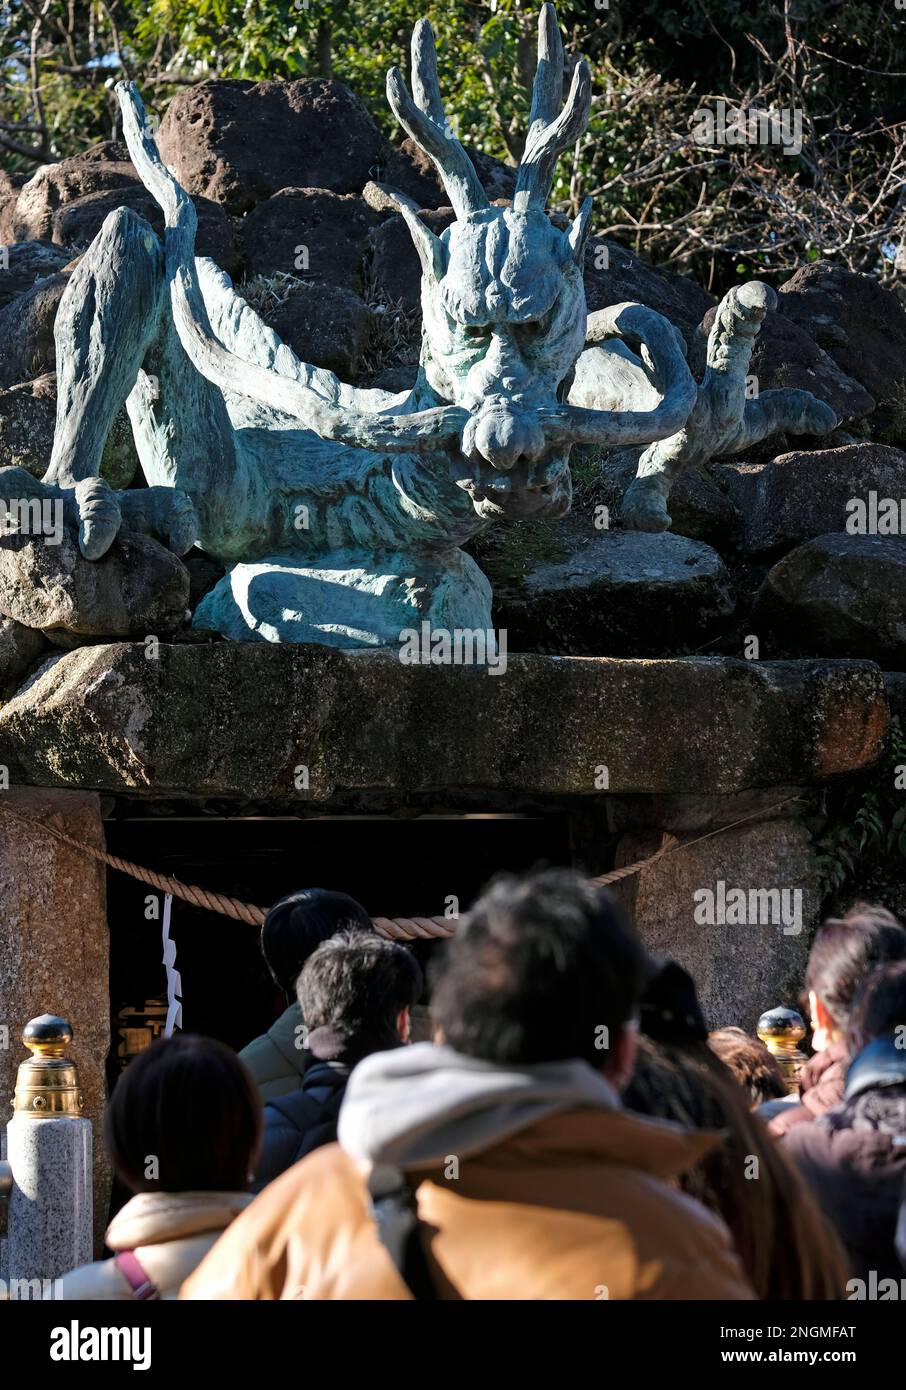 Drachen-Statue im Drachen-Palast, Teil des Enoshima-Schreins auf der Halbinsel Enoshima, mit anonymen Menschen, die an einem sonnigen Tag von hinten gesehen werden Stockfoto